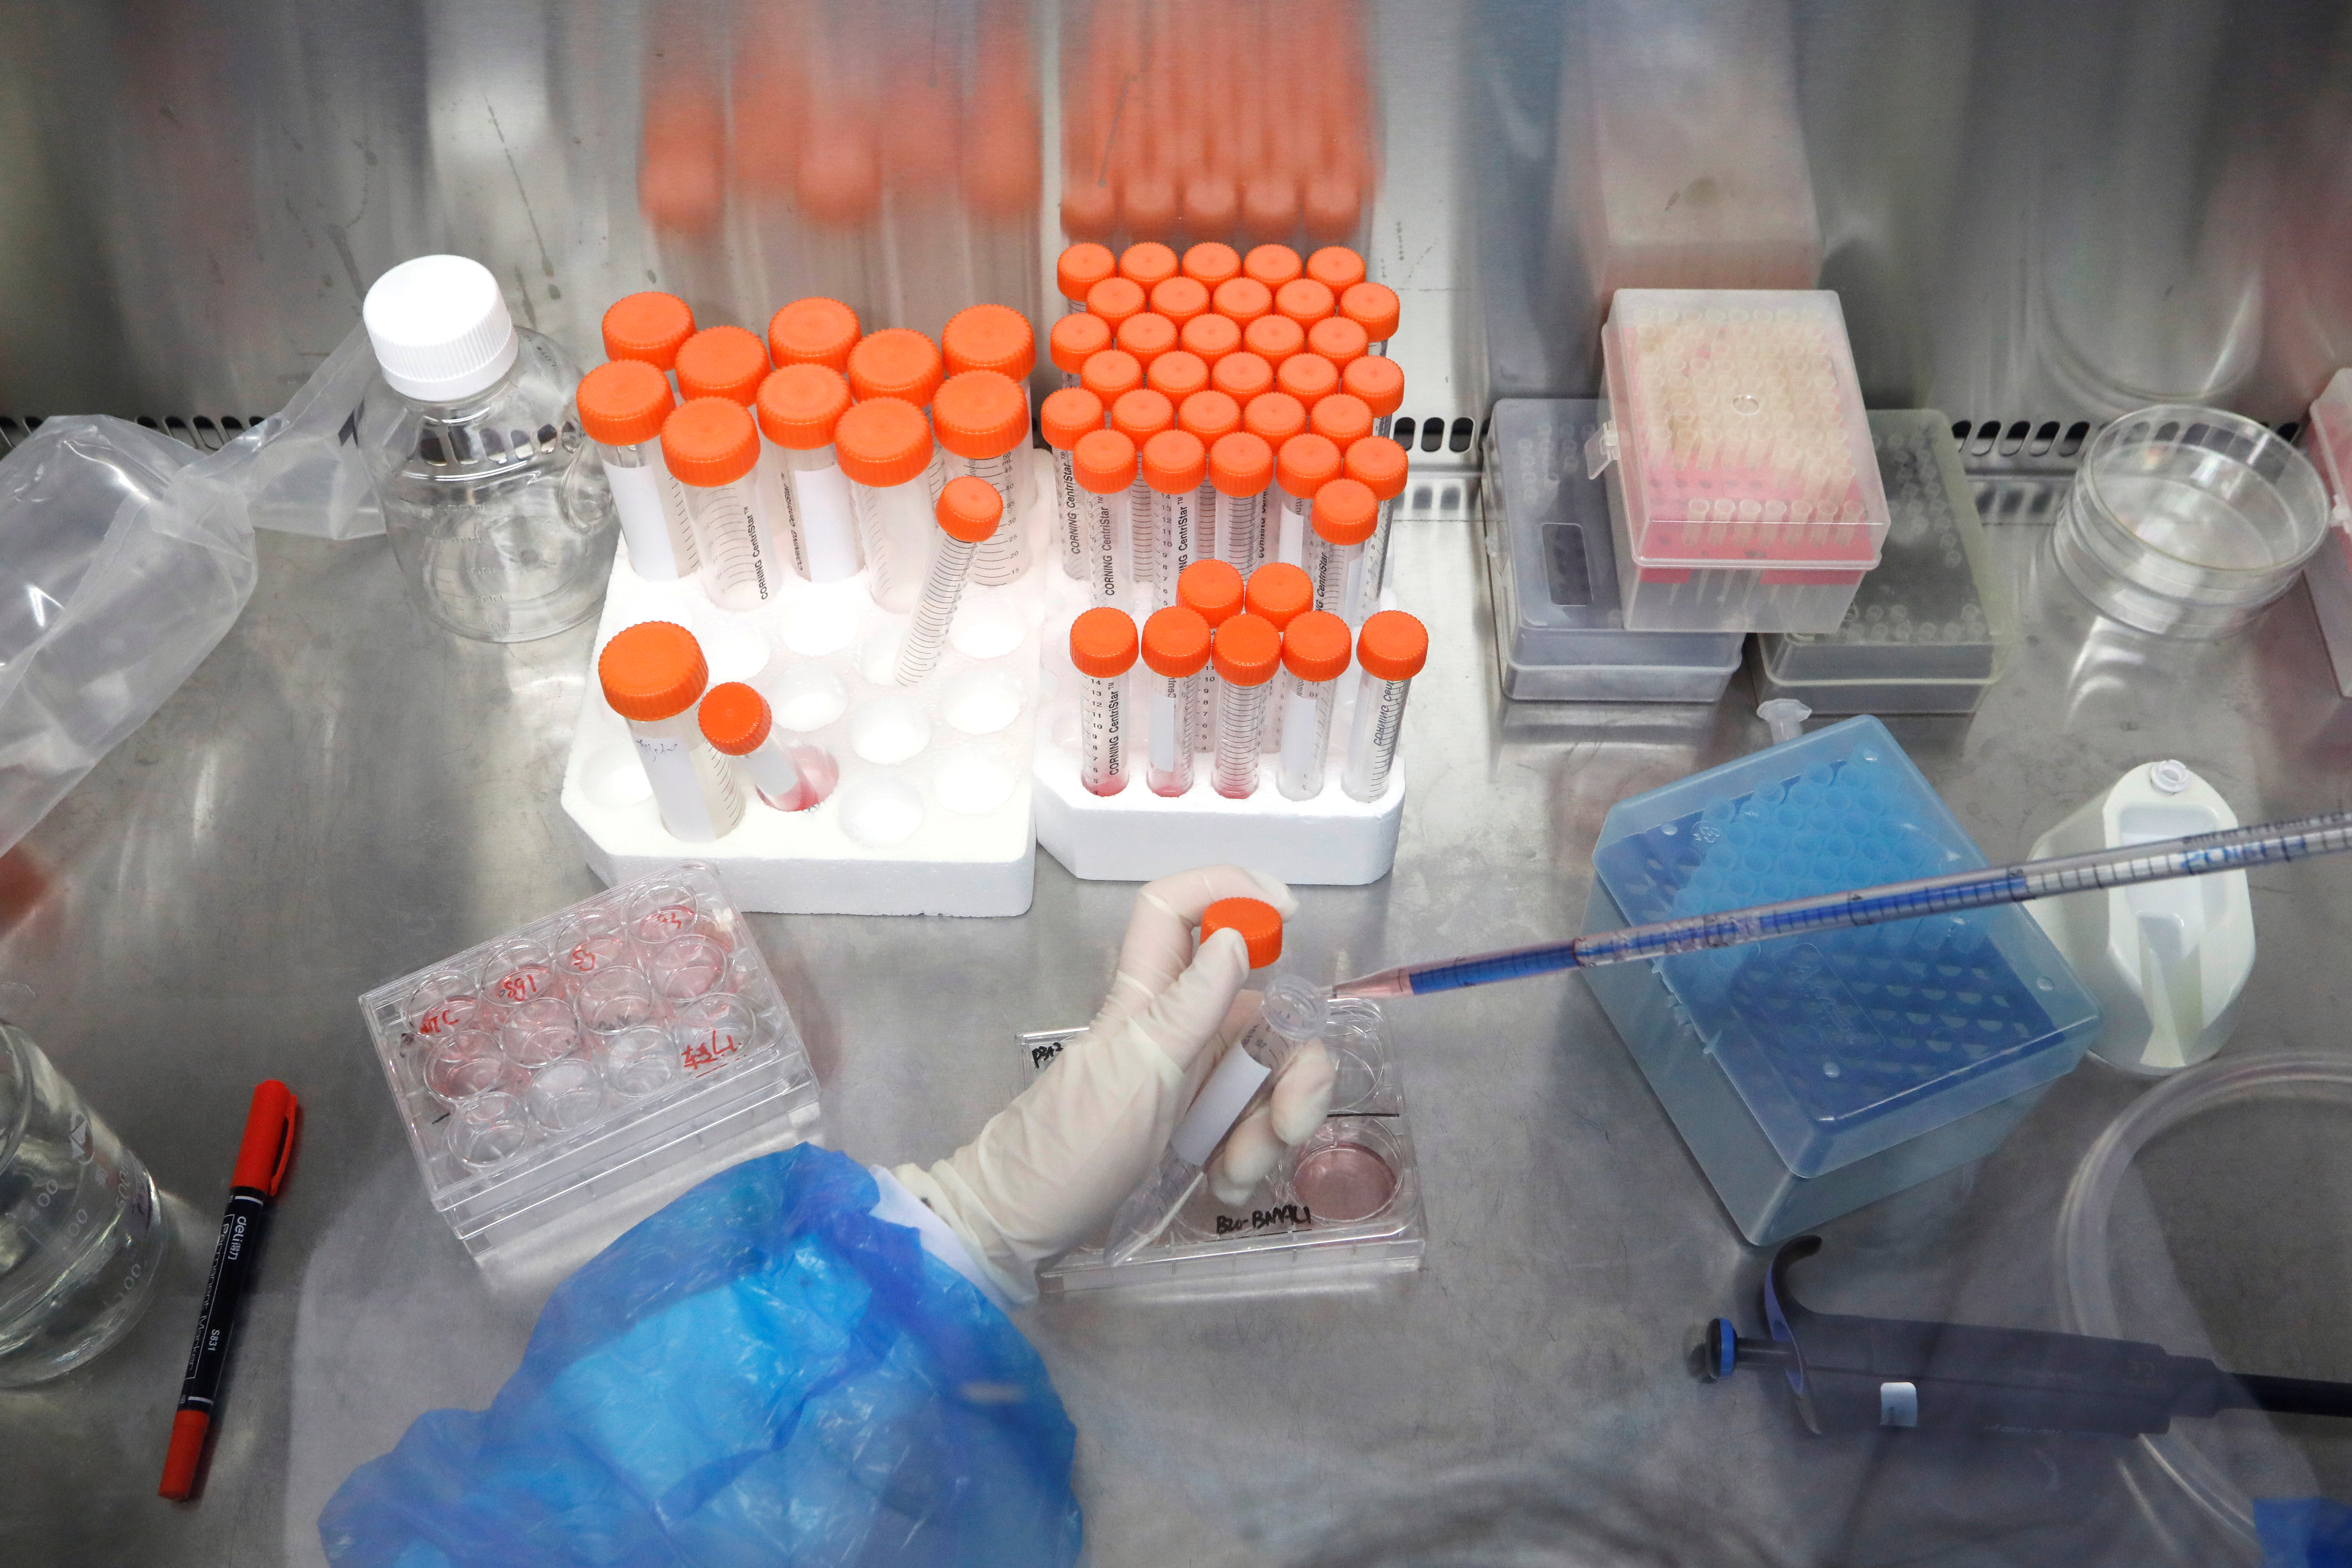  Cuando los investigadores quieren estudiar o alterar genéticamente virus, necesitan mantenerlos vivosREUTERS/Tingshu Wang